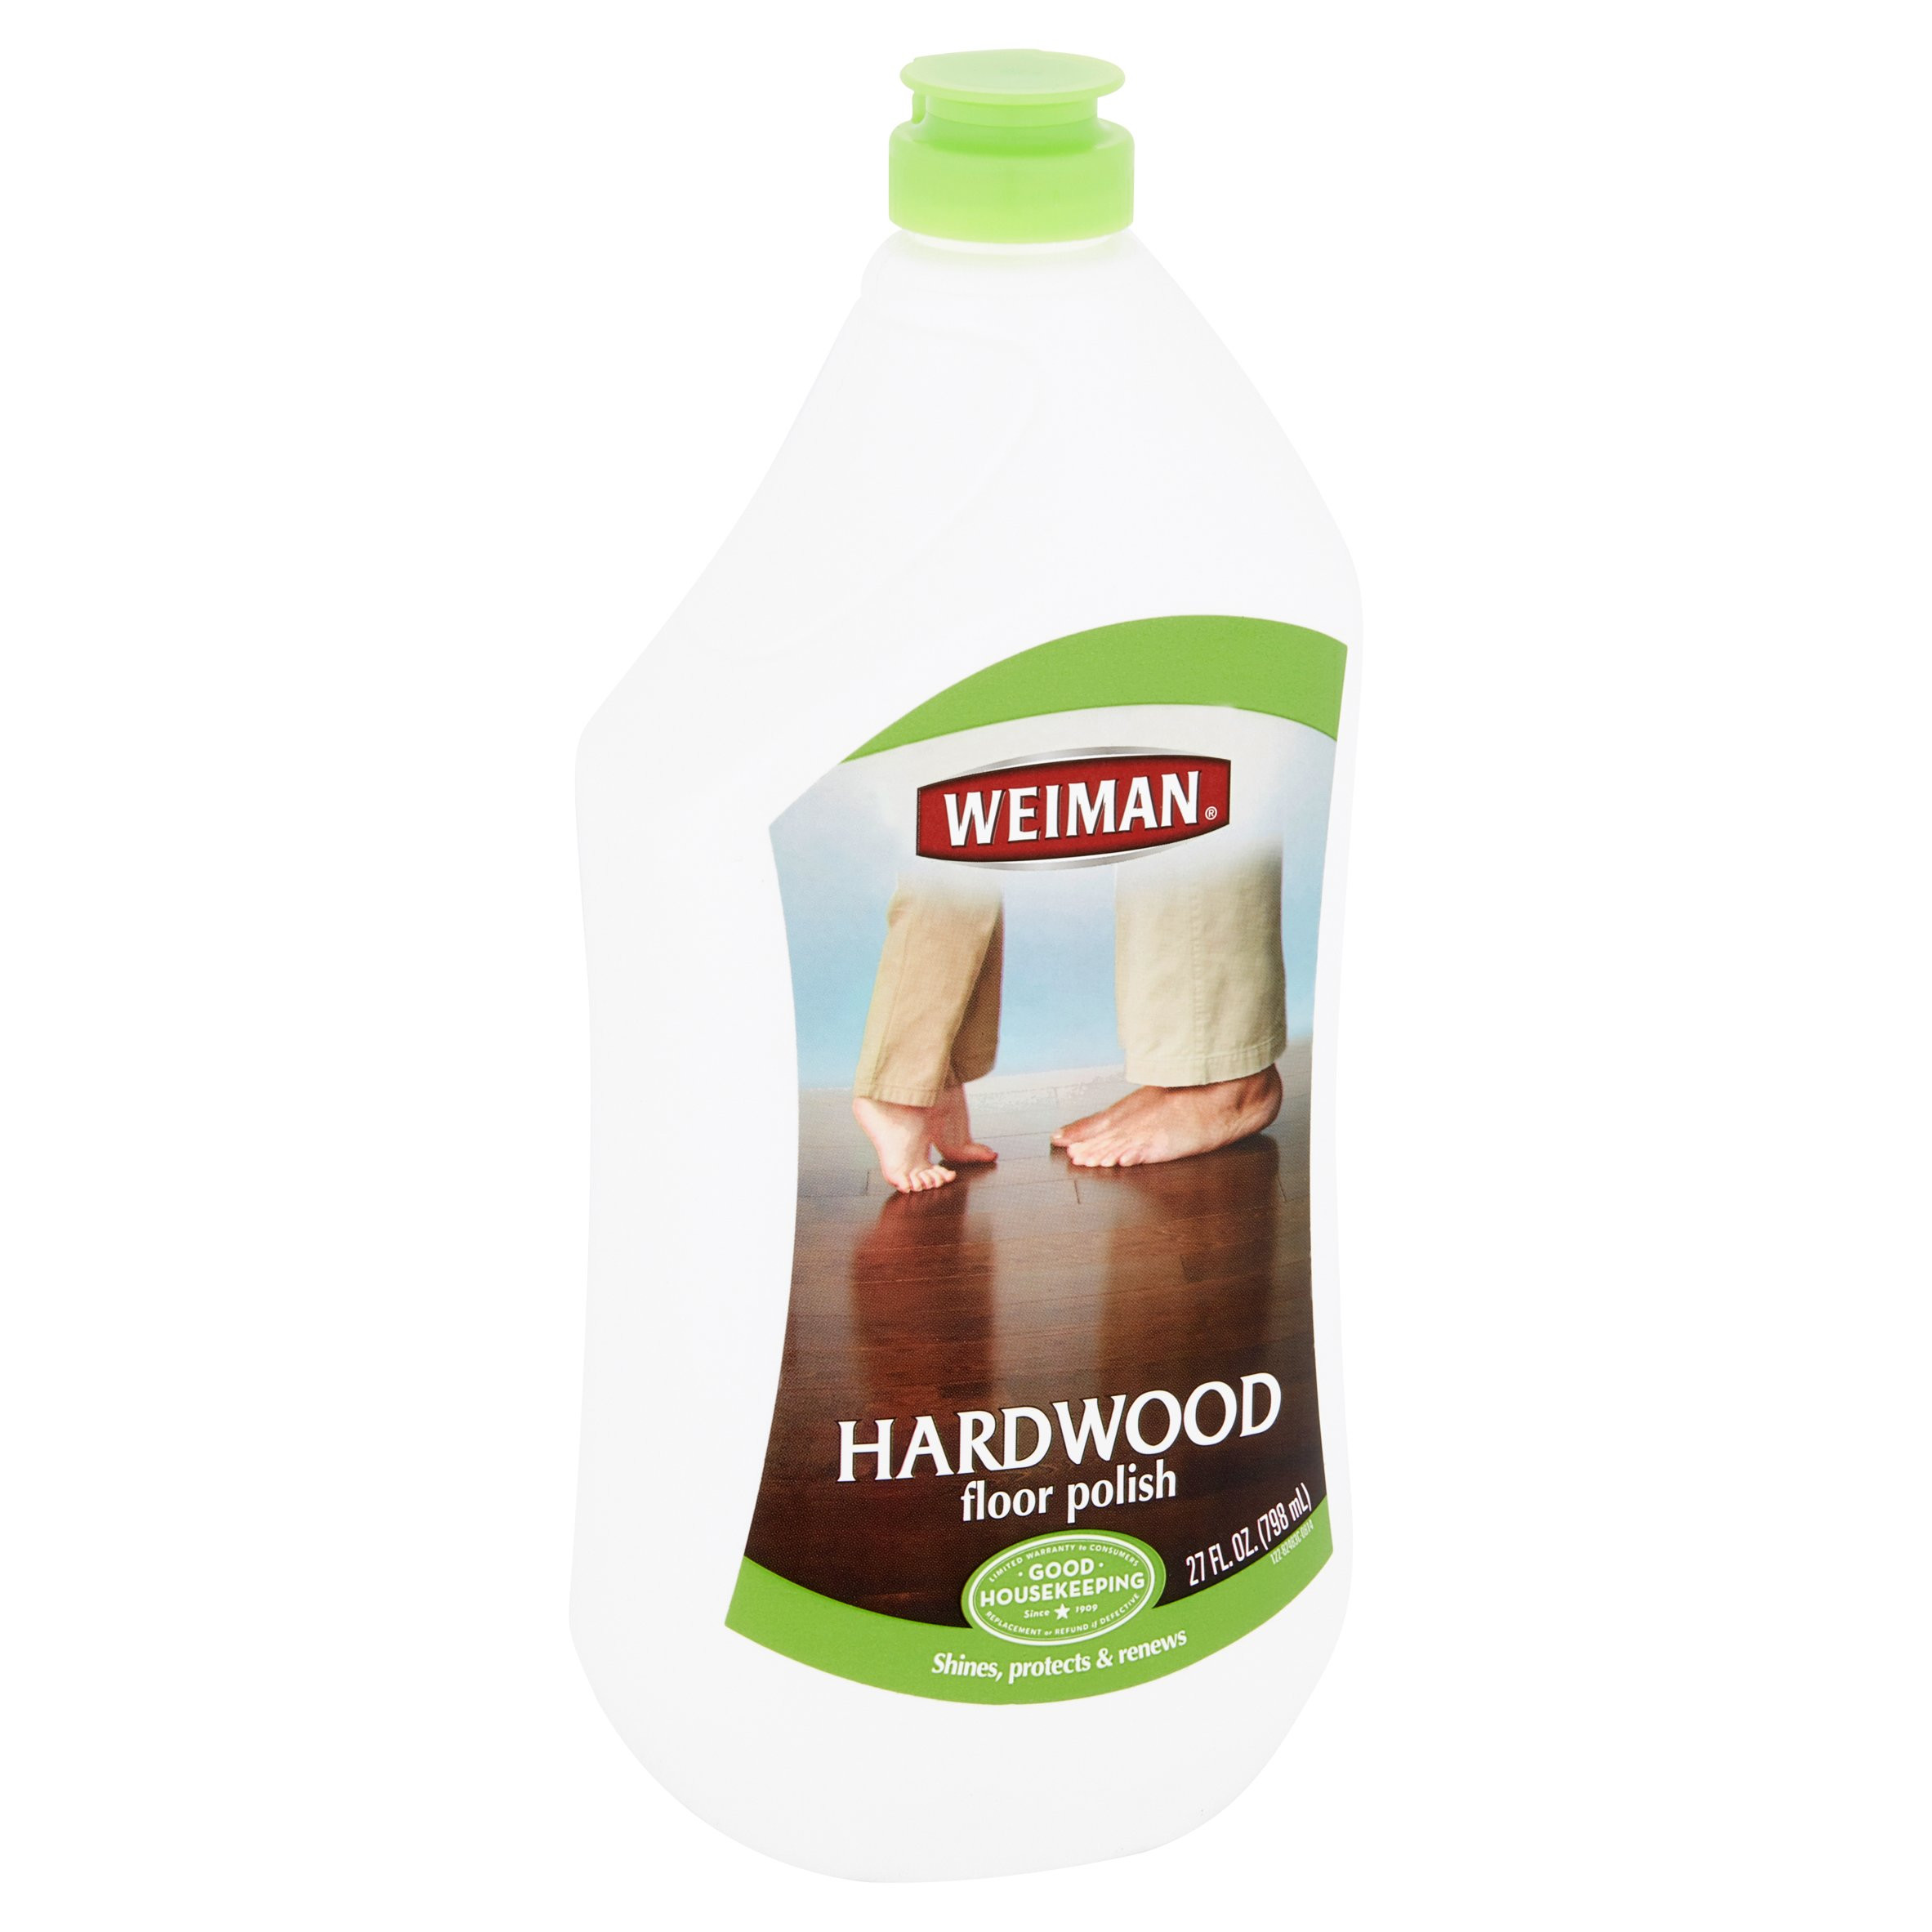 20 Fashionable Hardwood Floor Cleaner for Scratches 2022 free download hardwood floor cleaner for scratches of weiman hardwood floor polish 27 oz walmart com with regard to e3772481 6ecb 42fd 90cb a6883c38df54 1 14deb9d4c153dceb9f65f9a3409d6b3c